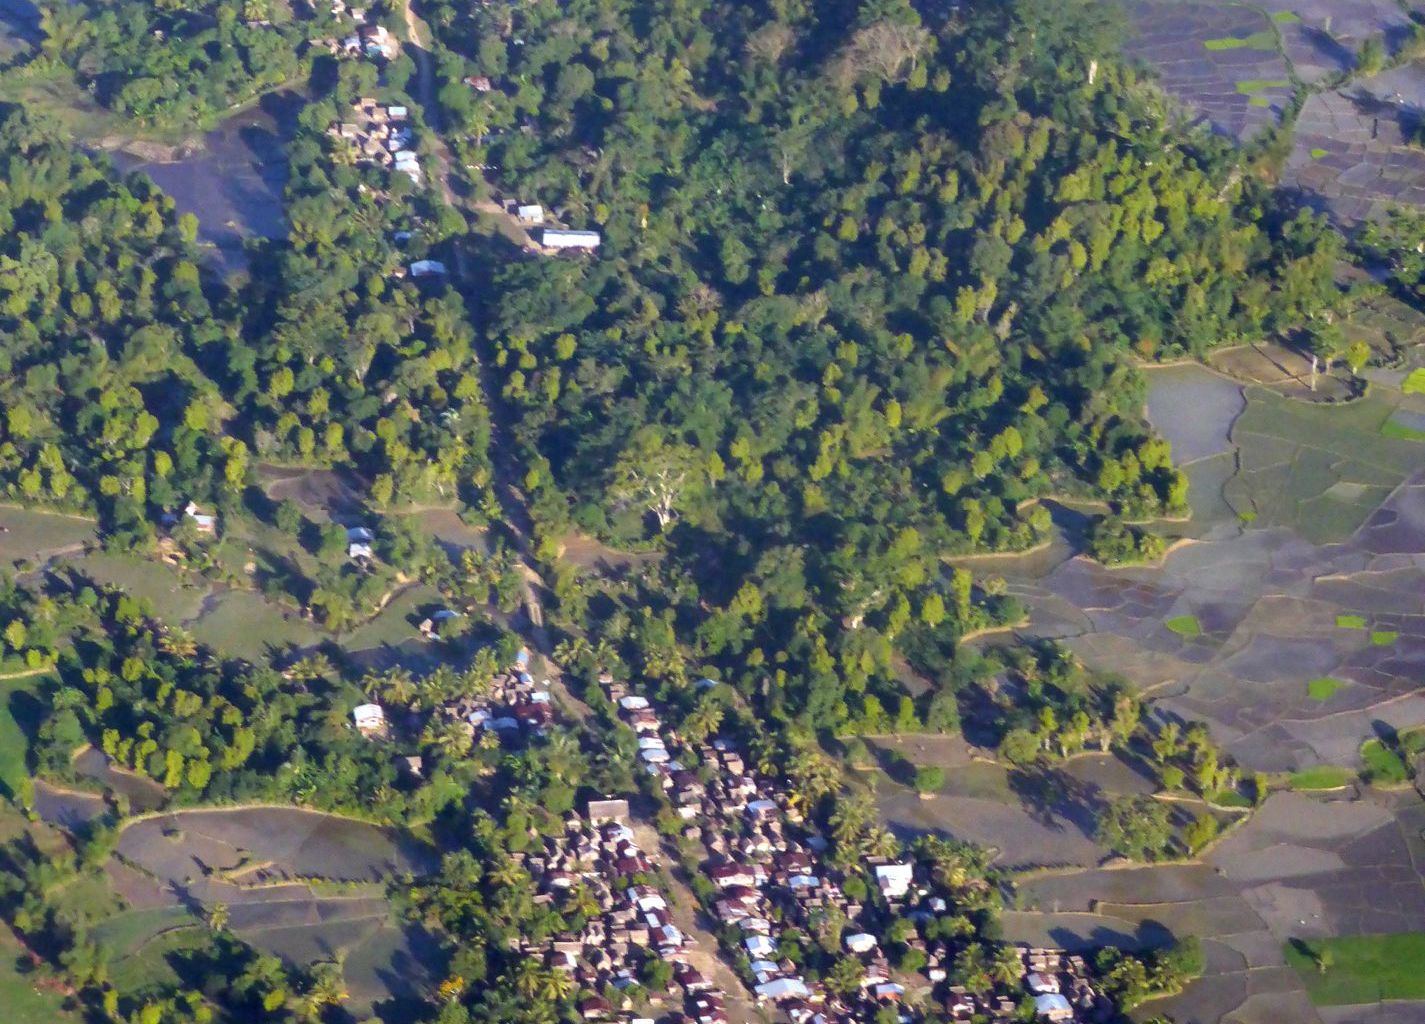 Typisches Dorf in der Studienregion Analanjirofo aus der Luft gesehen